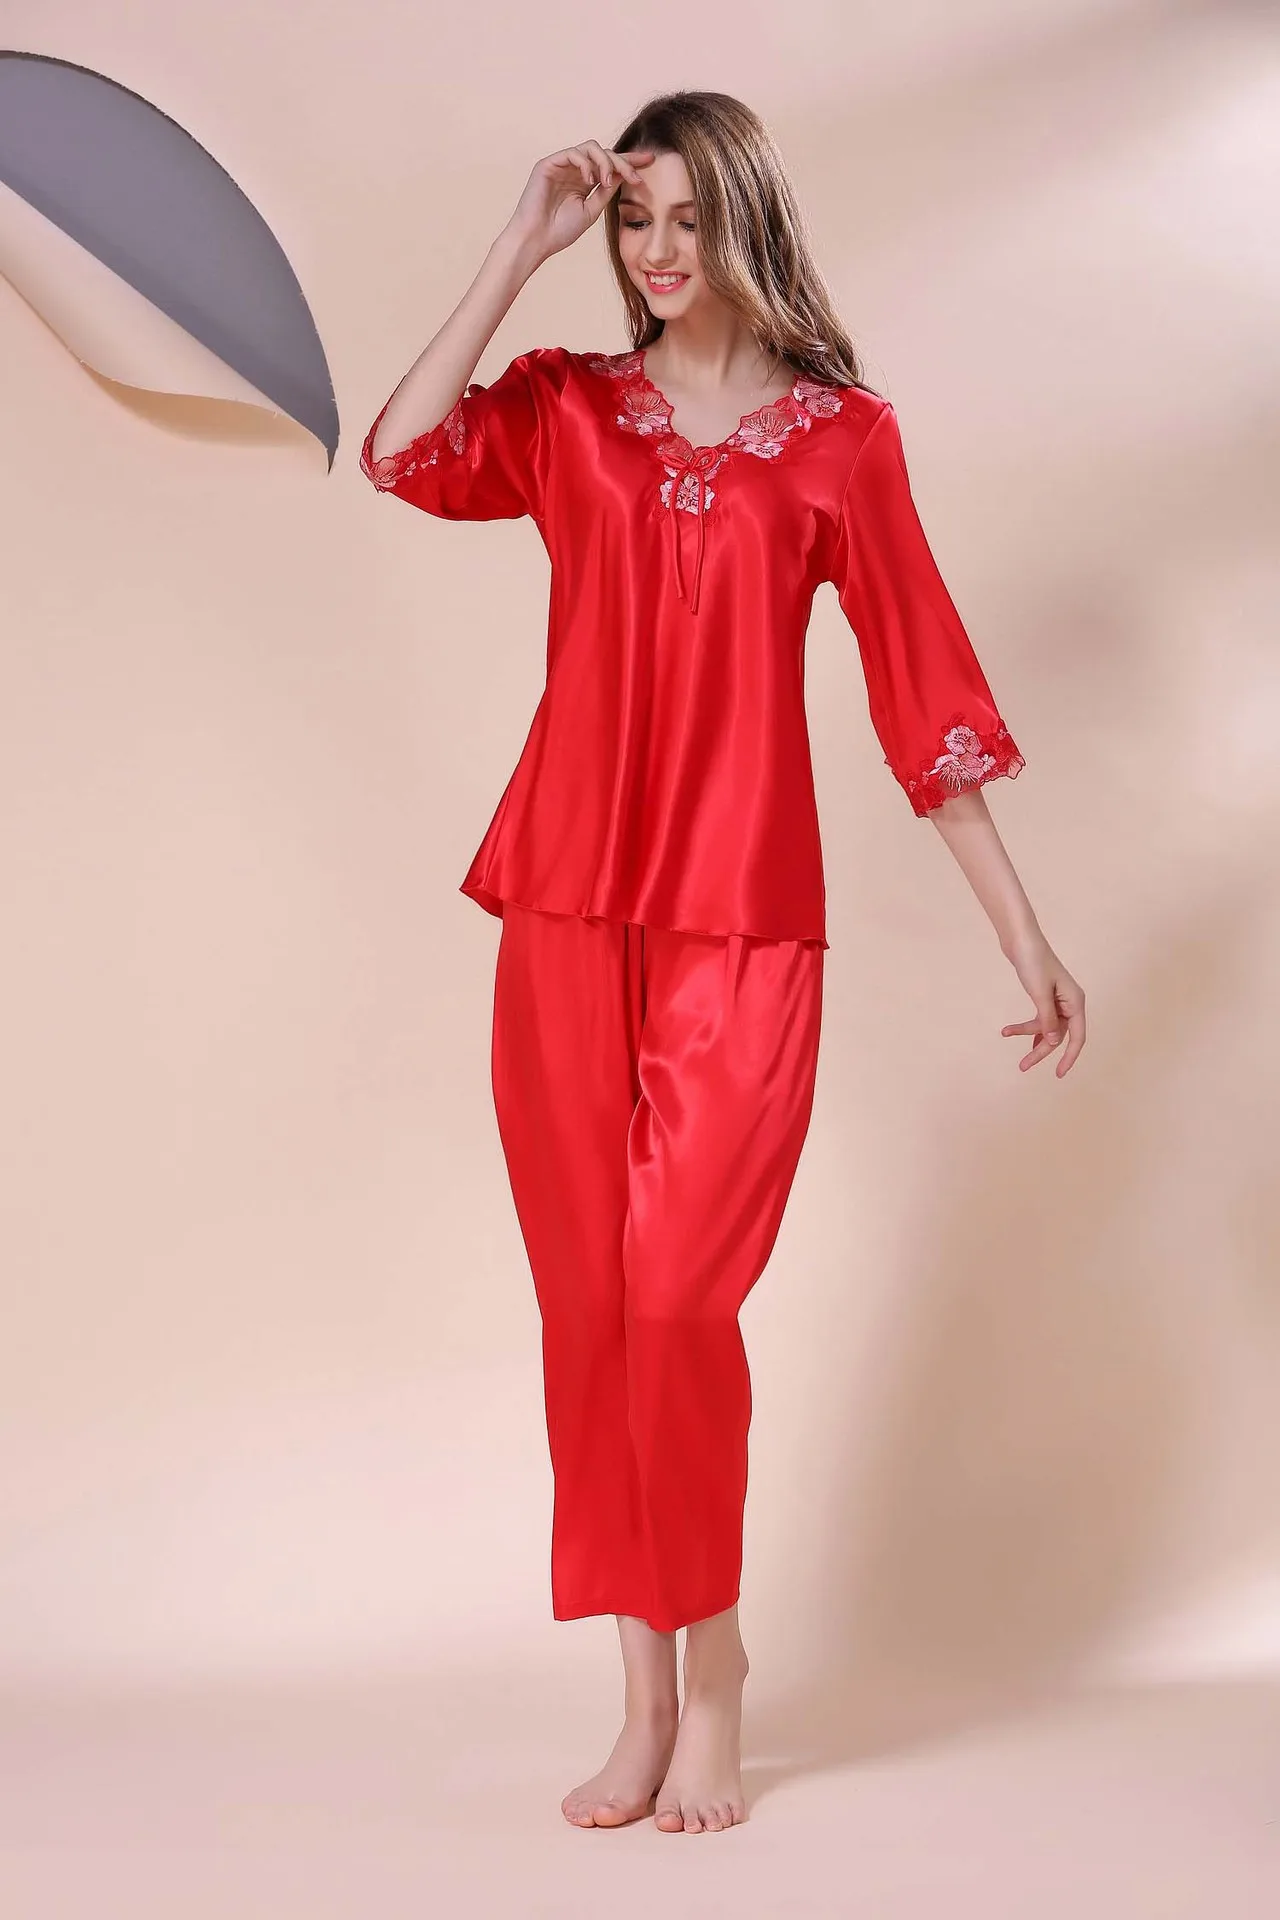 Сексуальная пижама, Женский пижамный комплект, шелковые пижамы для женщин, одежда для сна, розовая Дамская пижама с длинным рукавом, комплект из двух предметов, женское белье, женская одежда